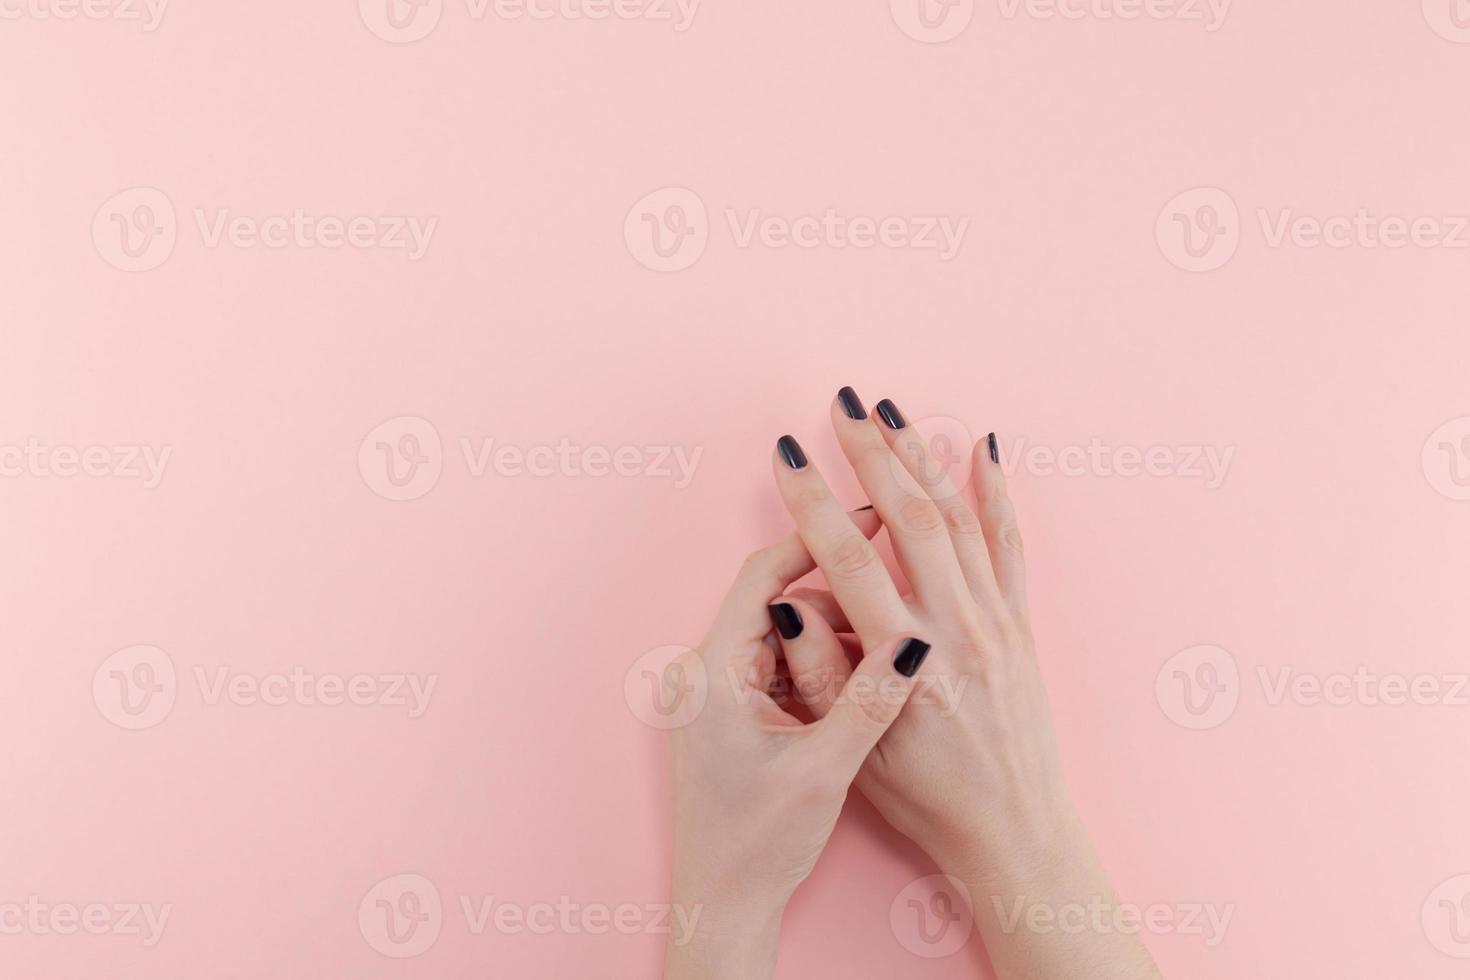 vrouwenhanden met zwarte manicure foto